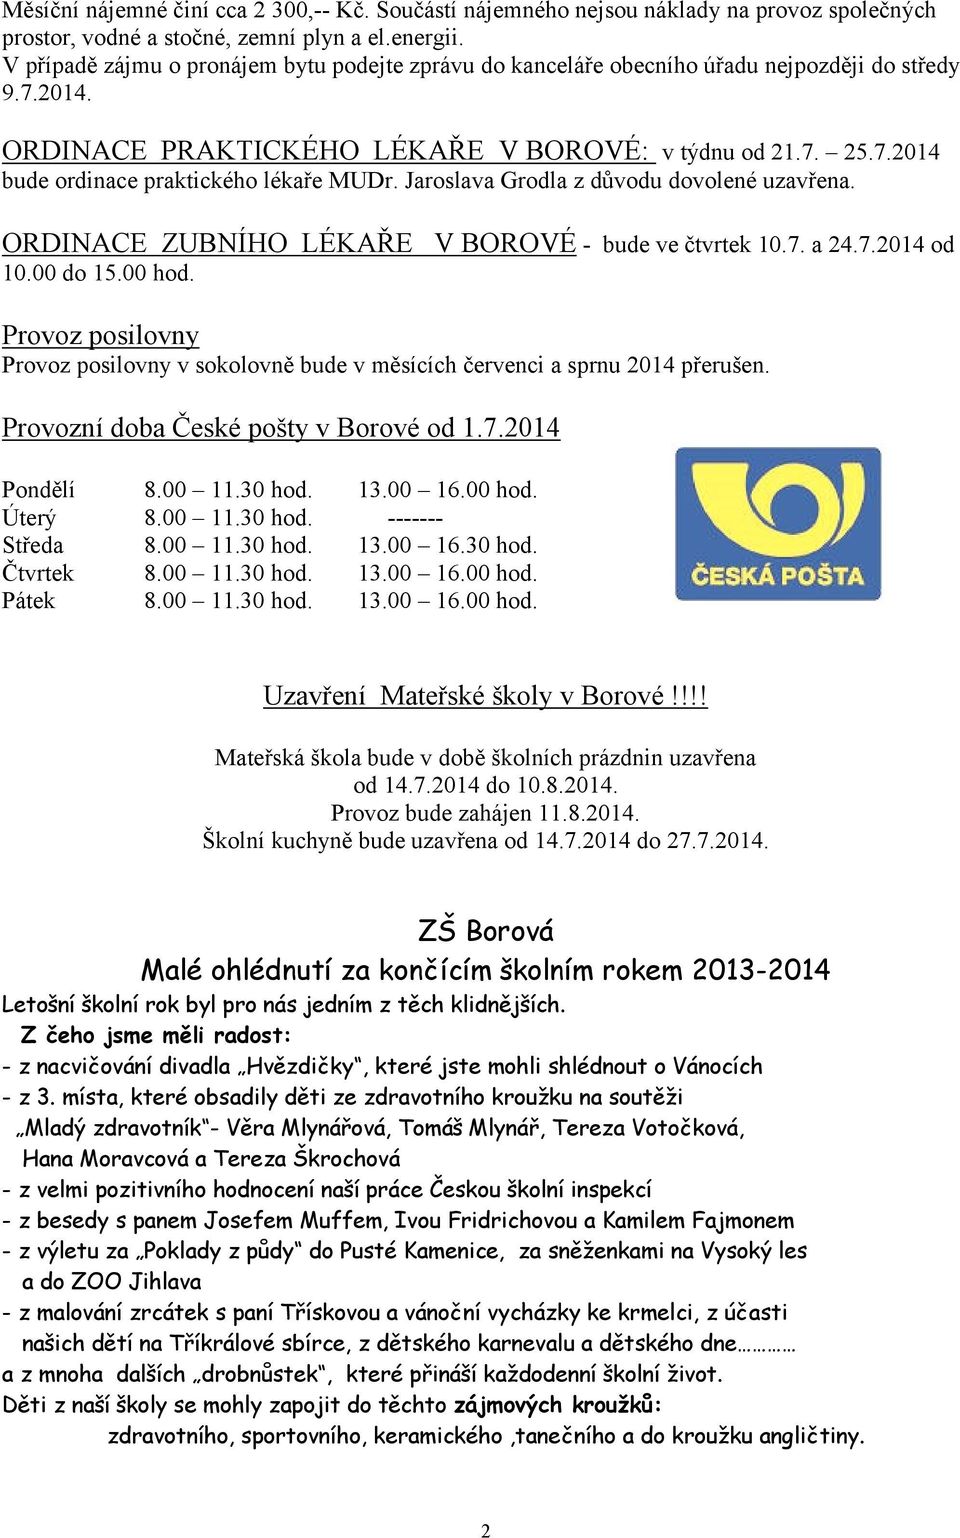 Jaroslava Grodla z důvodu dovolené uzavřena. ORDINACE ZUBNÍHO LÉKAŘE V BOROVÉ - bude ve čtvrtek 10.7. a 24.7.2014 od 10.00 do 15.00 hod.